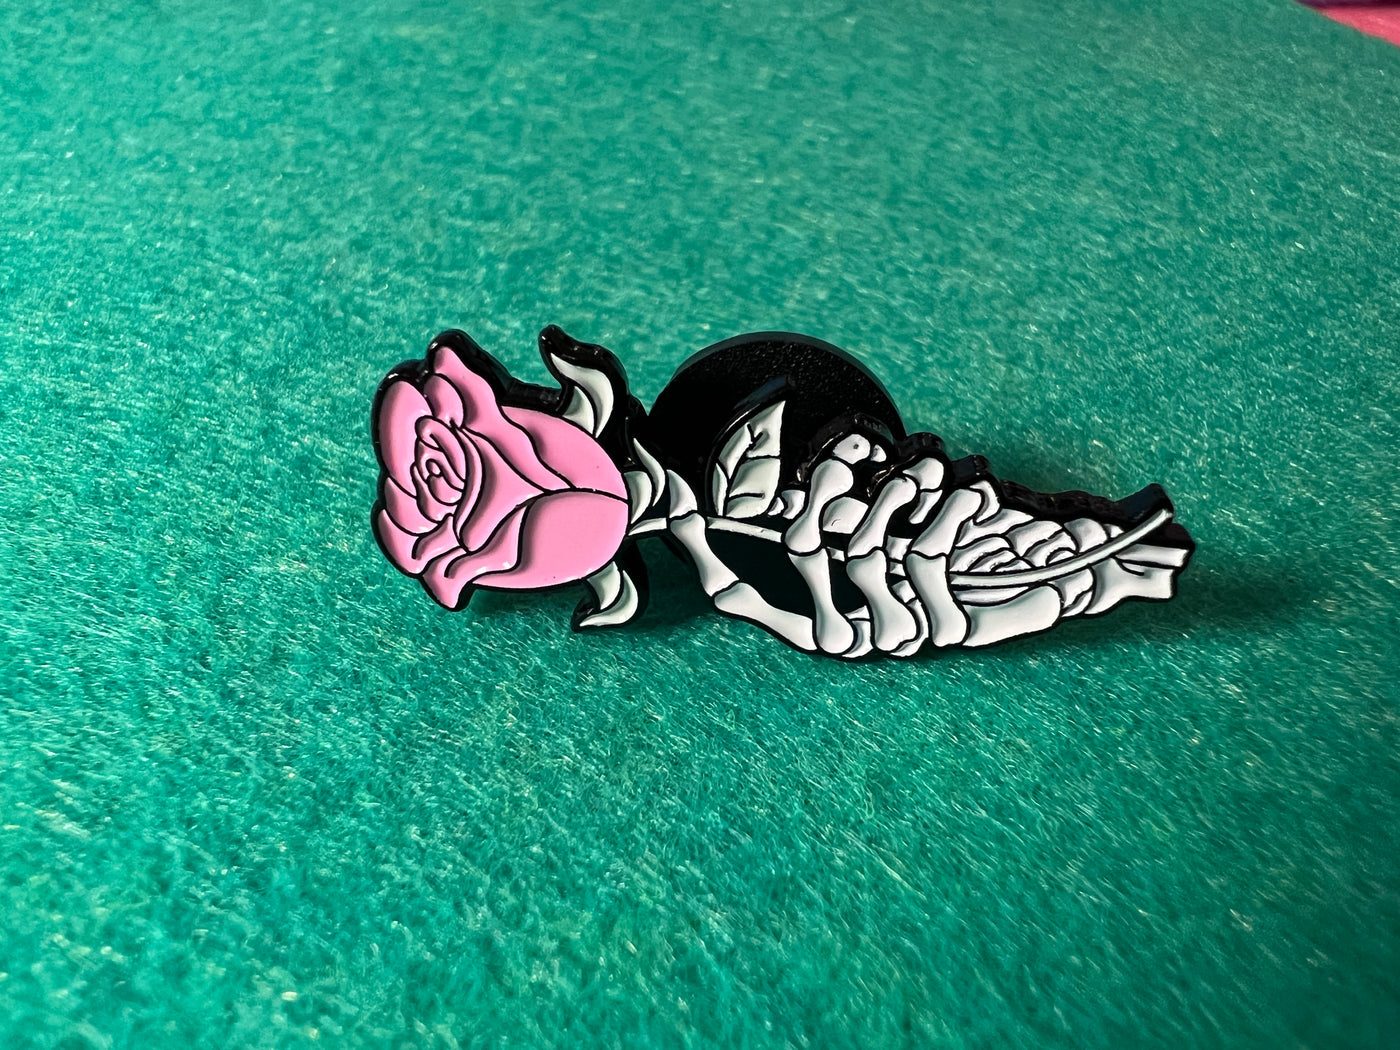 A Rose from my Favorite Skeleton Enamel Pin